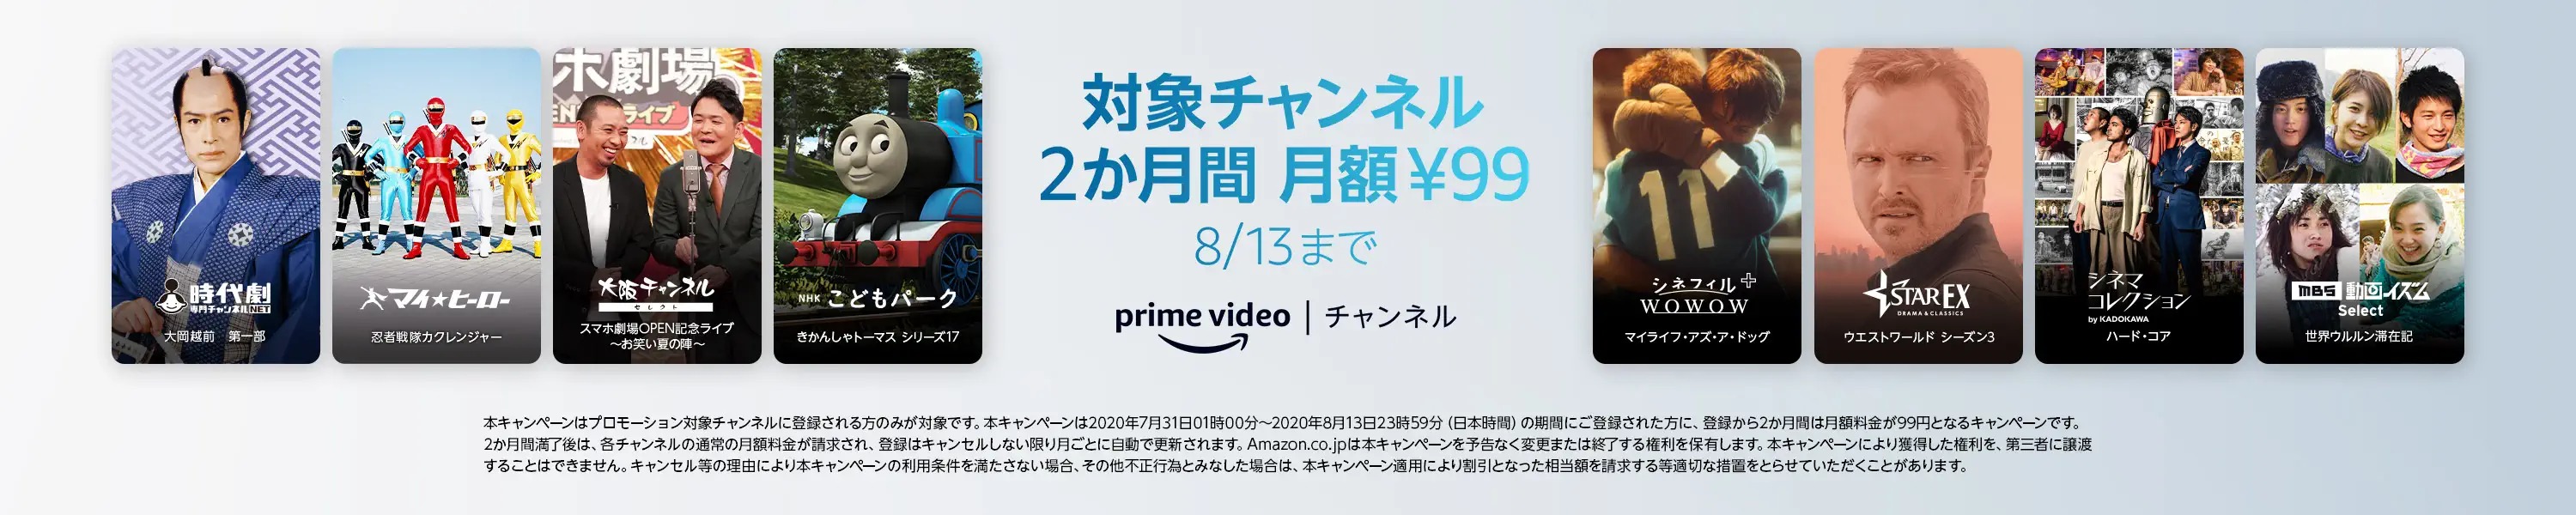 Amazon、Prime Videoで｢対象チャンネル99円キャンペーン｣とレンタル/購入が100円からになる｢SUMMER SALE｣を開始